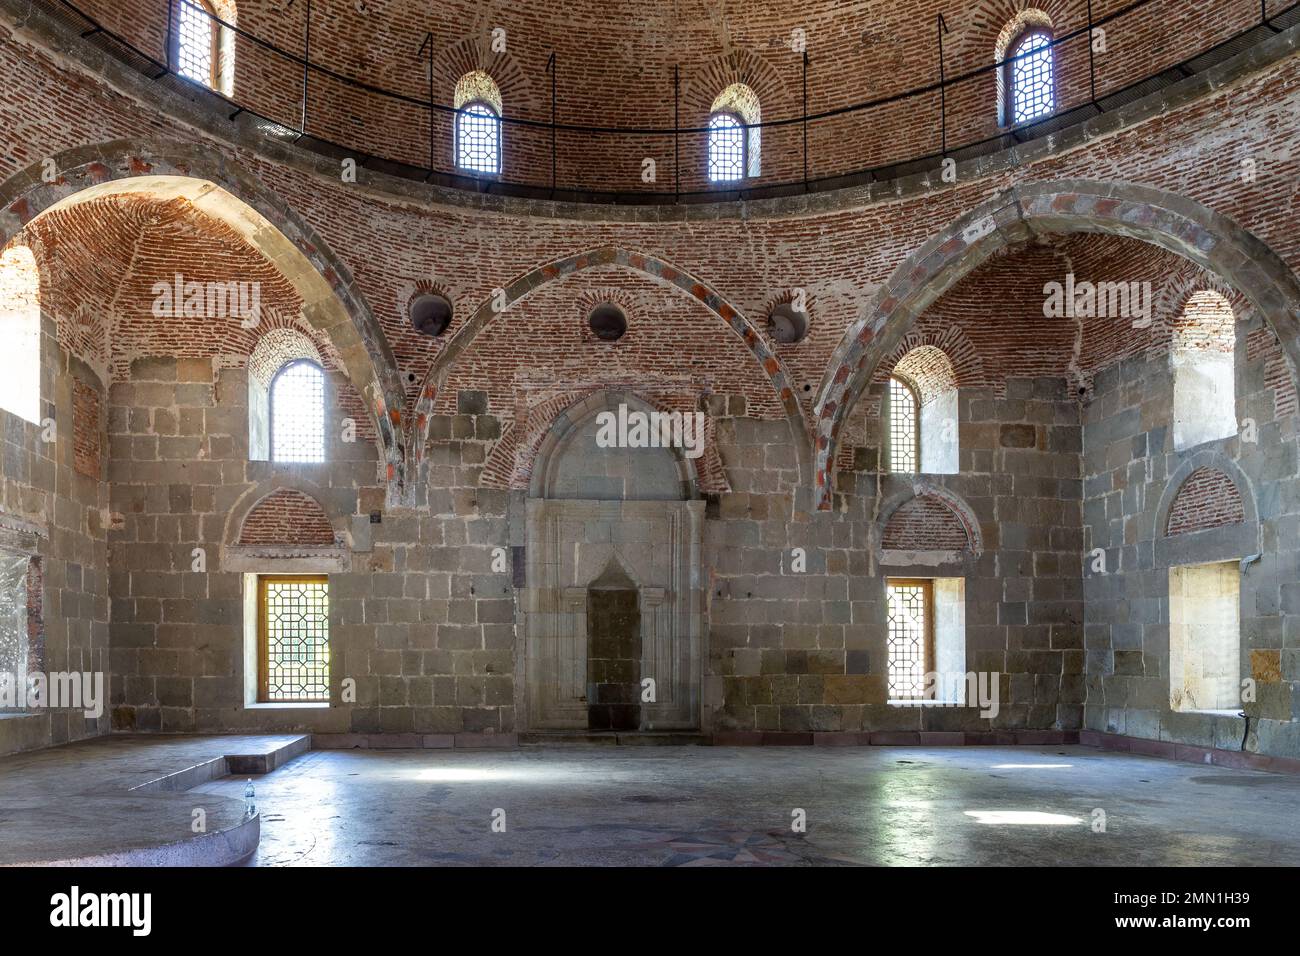 Moschea Akhmediye vista interna al Castello di Akhaltsikhe (Rabati) con pareti di pietra ruvida e vecchi affreschi sbiaditi, Georgia. Foto Stock